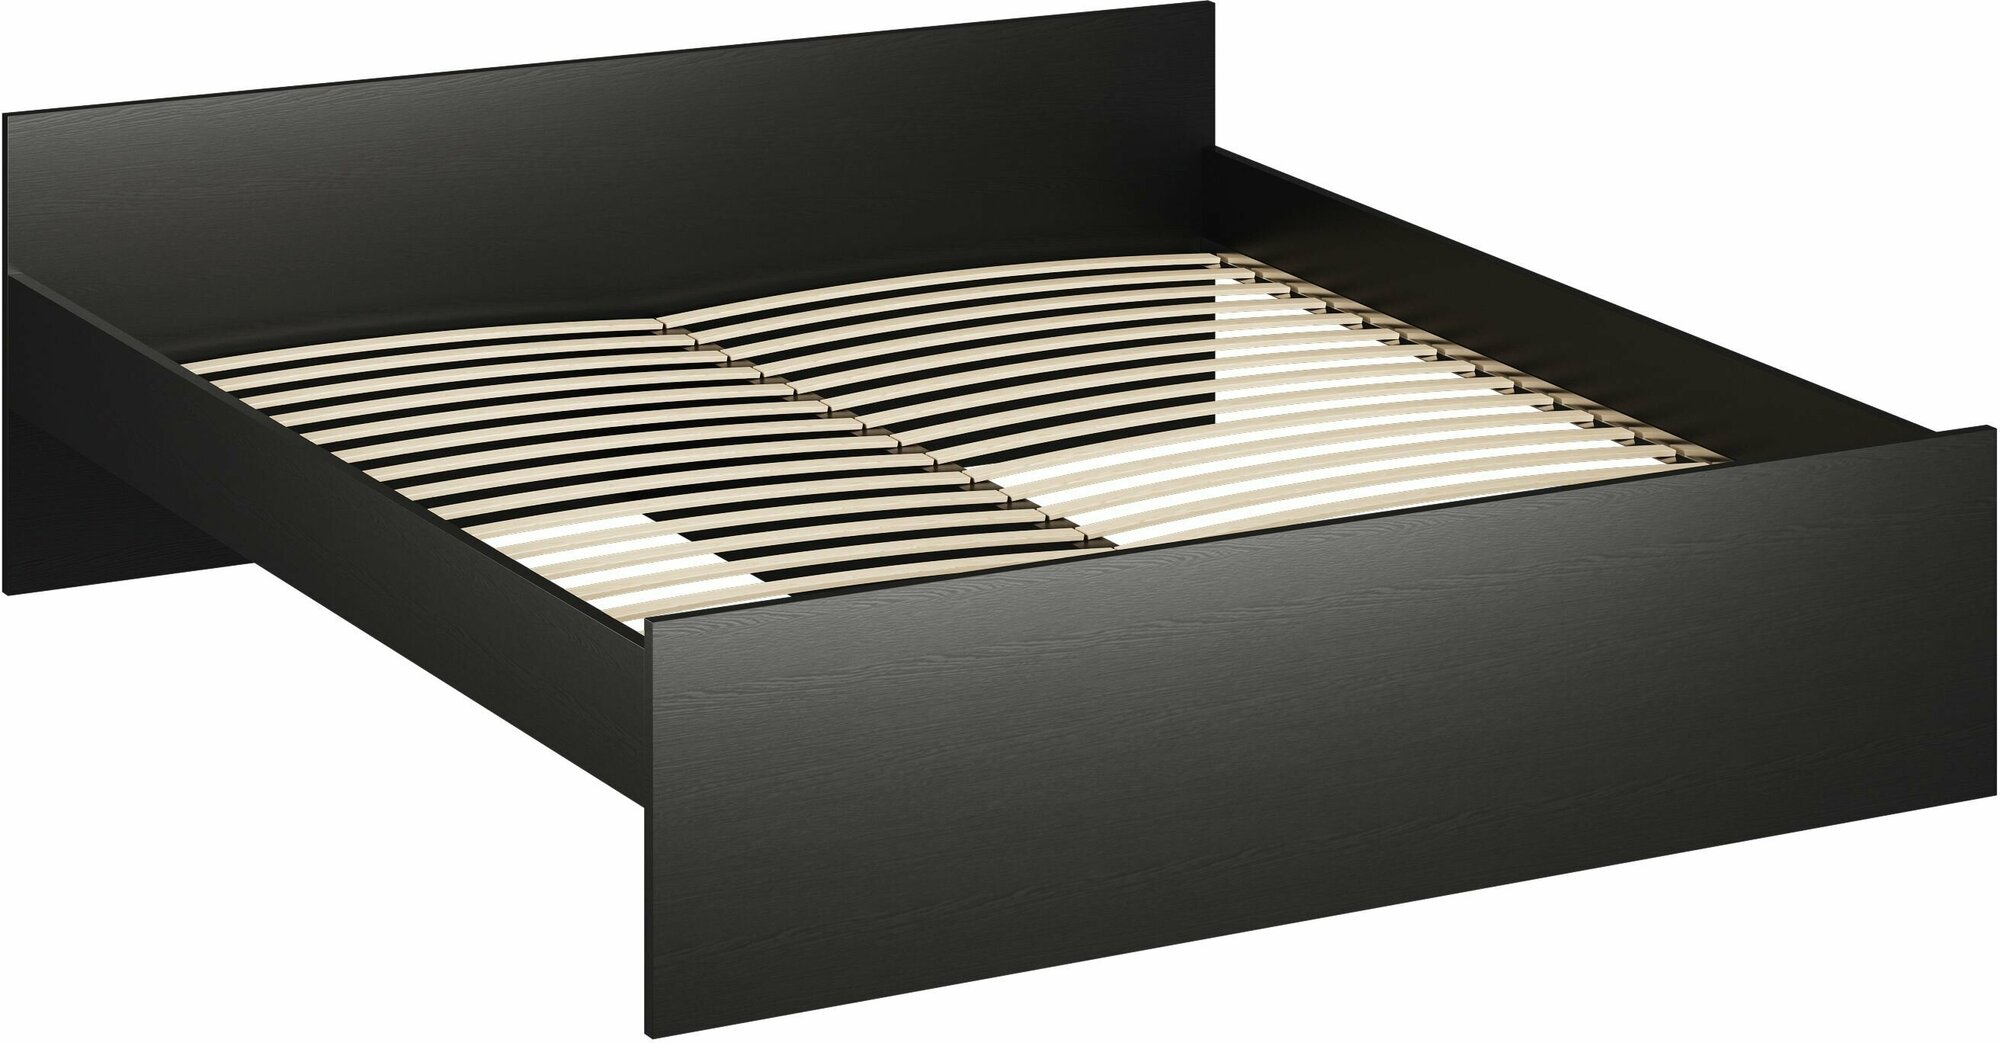 Кровать ГУД ЛАКК Орион, двуспальная, 180х200 см, черная, дуб венге